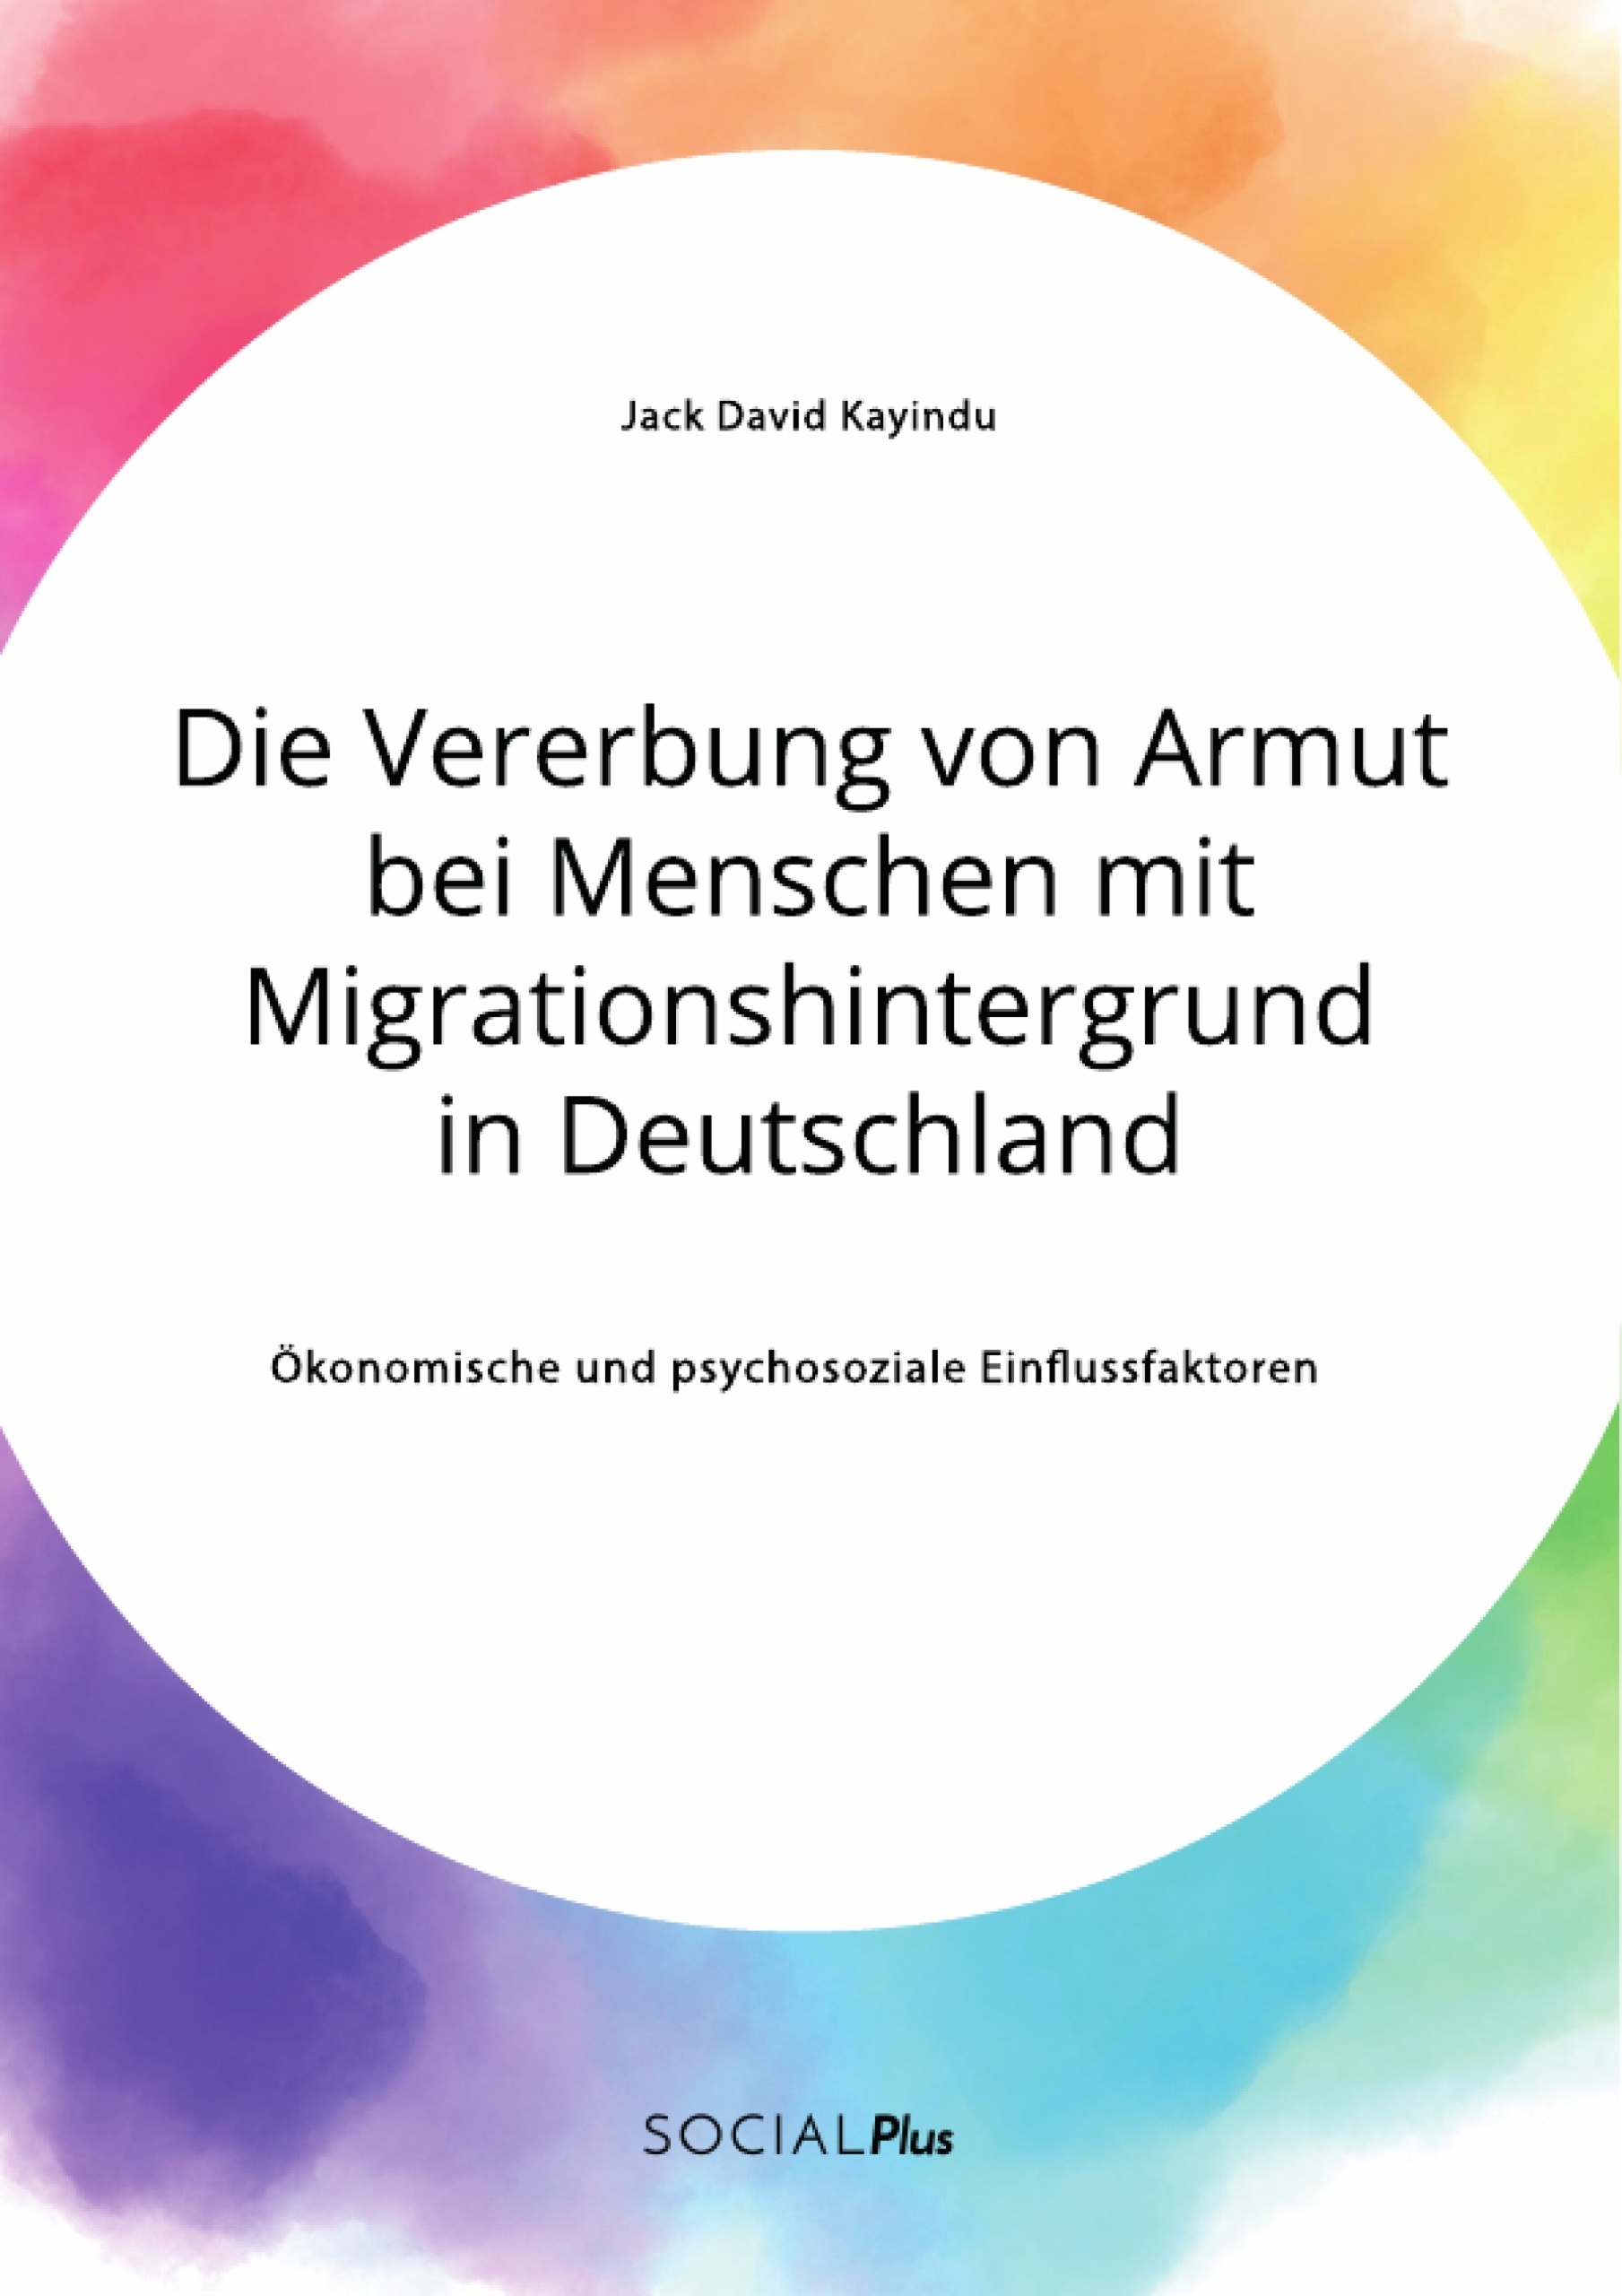 Titel: Die Vererbung von Armut bei Menschen mit Migrationshintergrund in Deutschland. Ökonomische und psychosoziale Einflussfaktoren